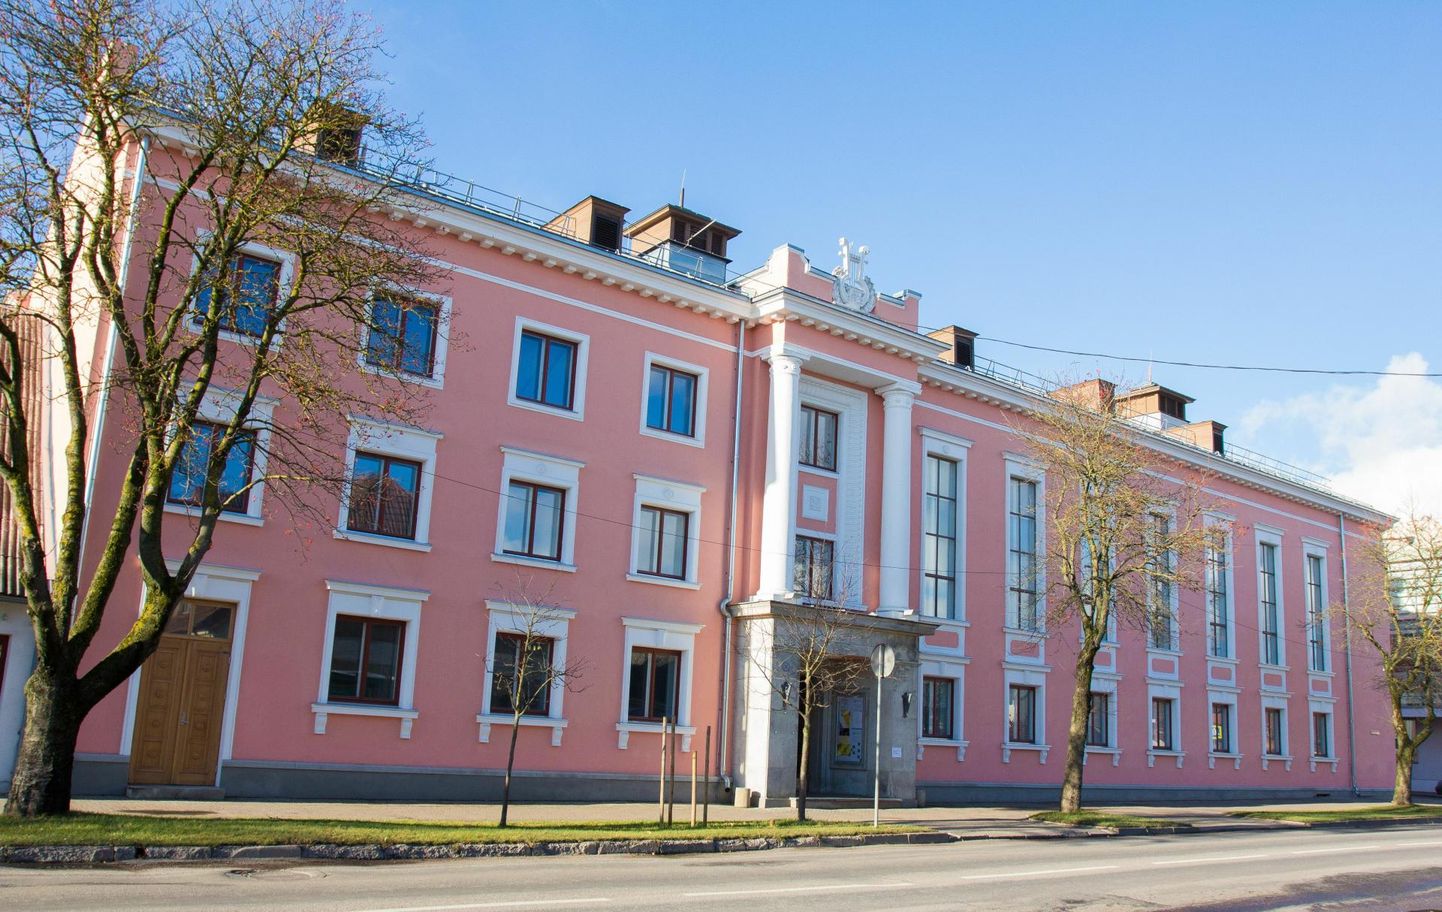 Viljandi kultuurimaja, praeguse Sakala keskuse ajalugu ulatub XVIII sajandi viimasesse veerandisse, mil samal kohal tegutses Seasaare kõrts võõrastemajaga.